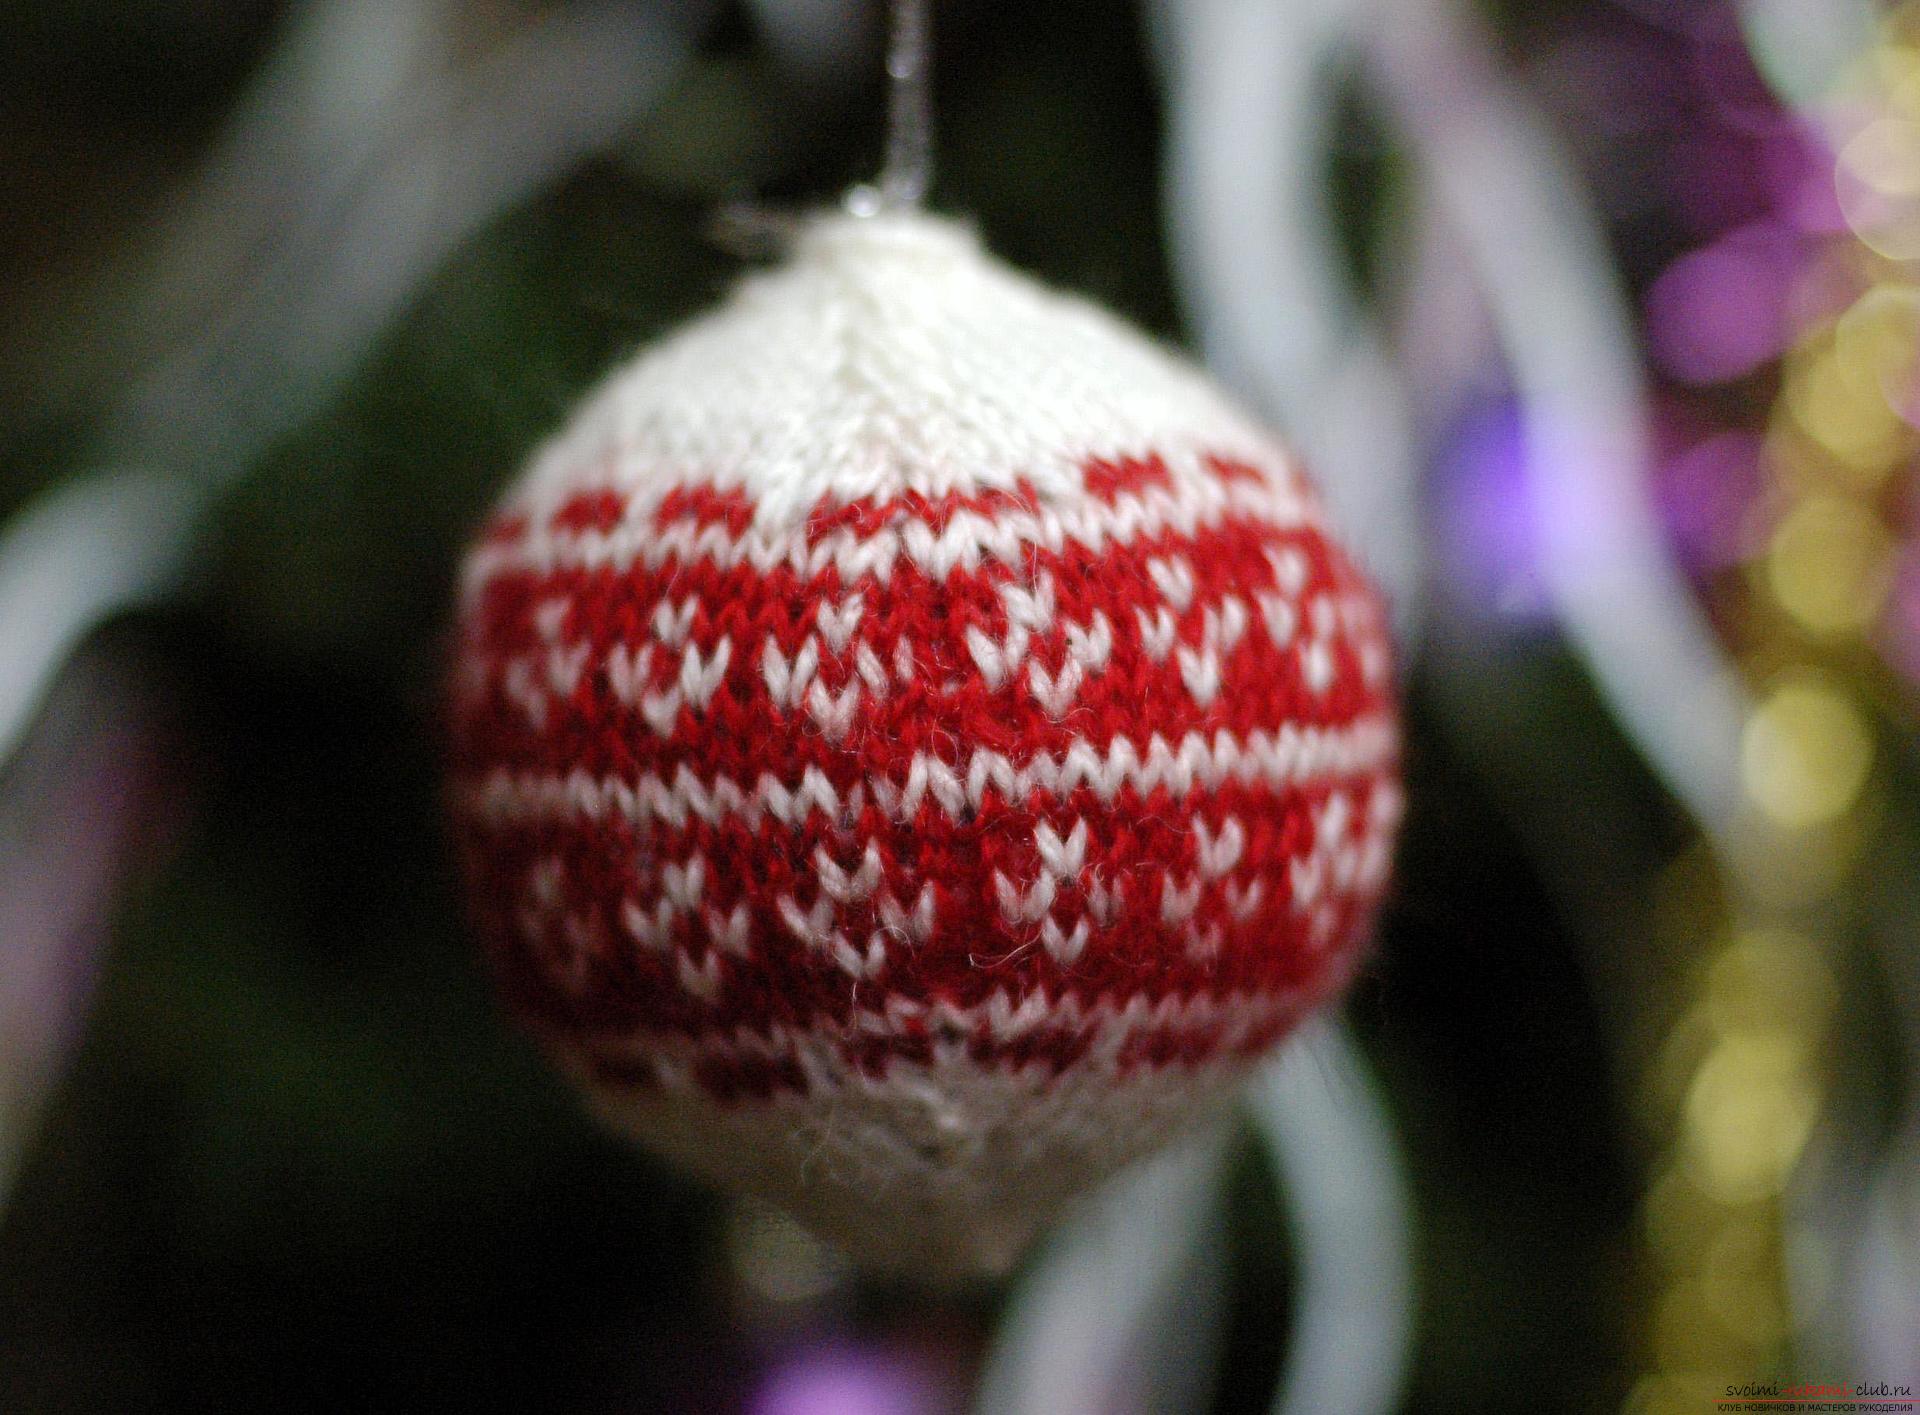 Приятно делать своими руками новогодние поделки, например, связать крючком шары на елку.. Фото №1